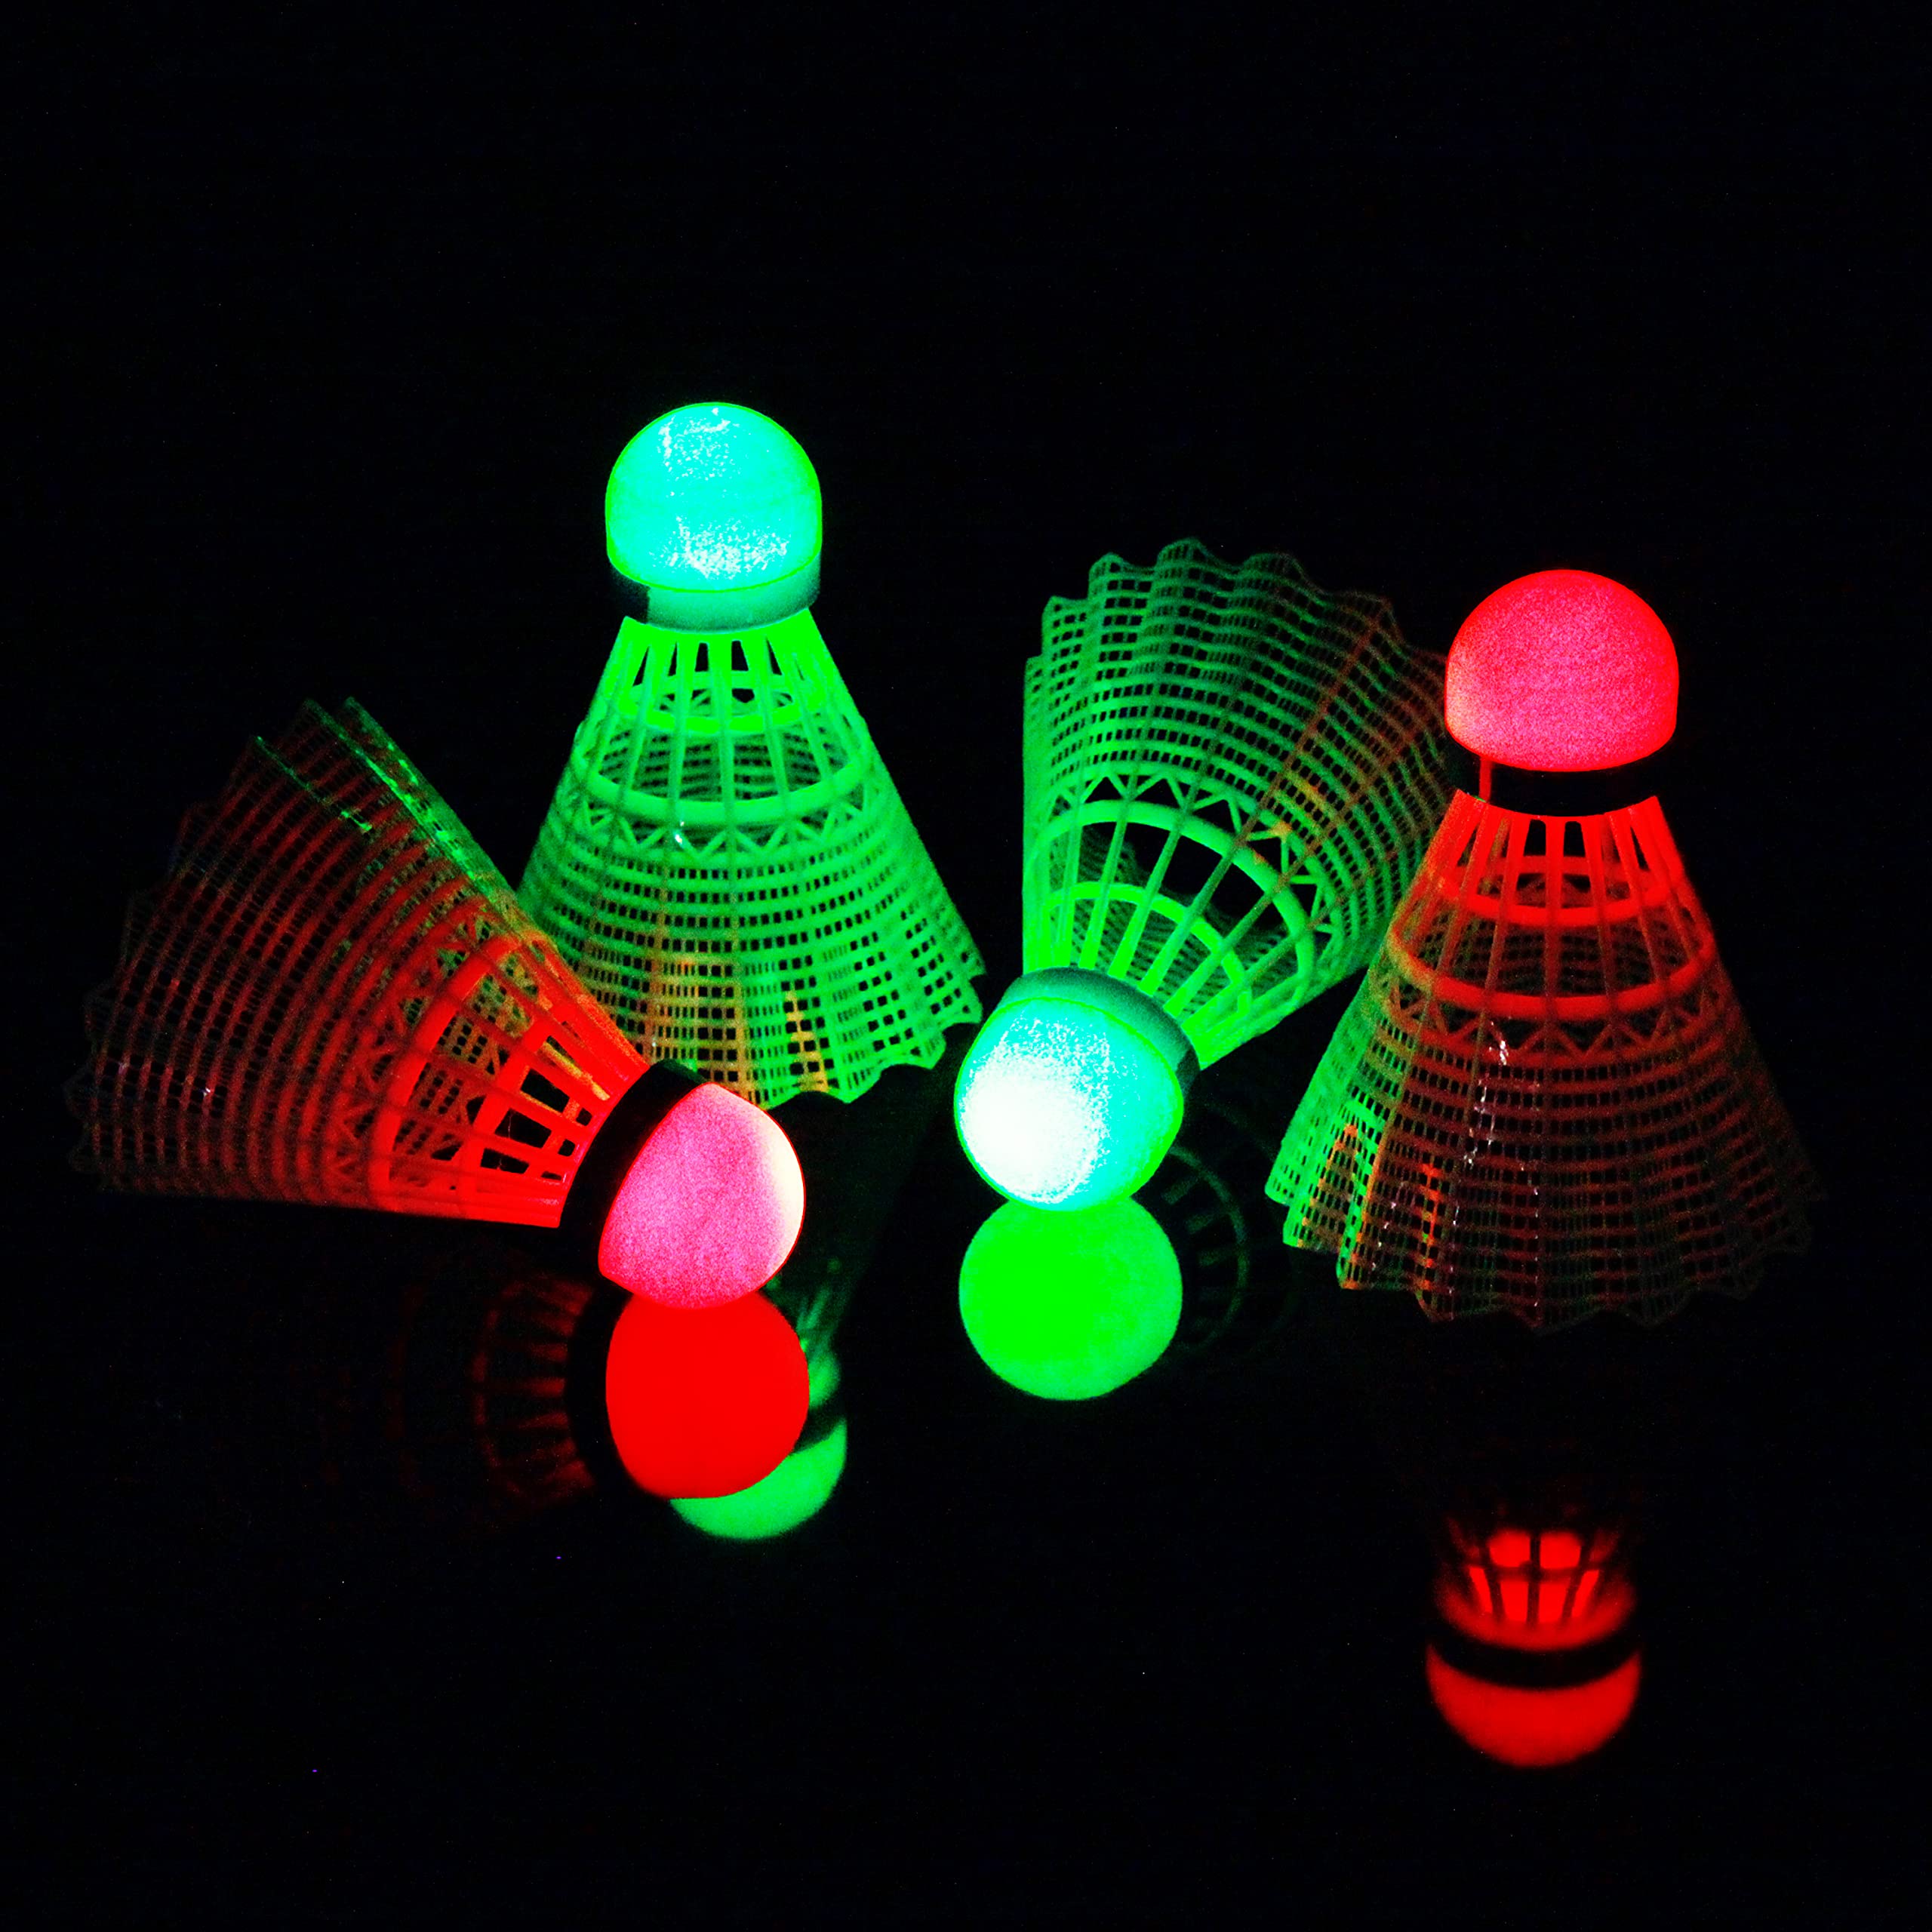 E-Jet LED Badminton Shuttlecocks, Badminton Birdies 4pcs - Lighting glow in The Dark Night, White (EOB332562020)